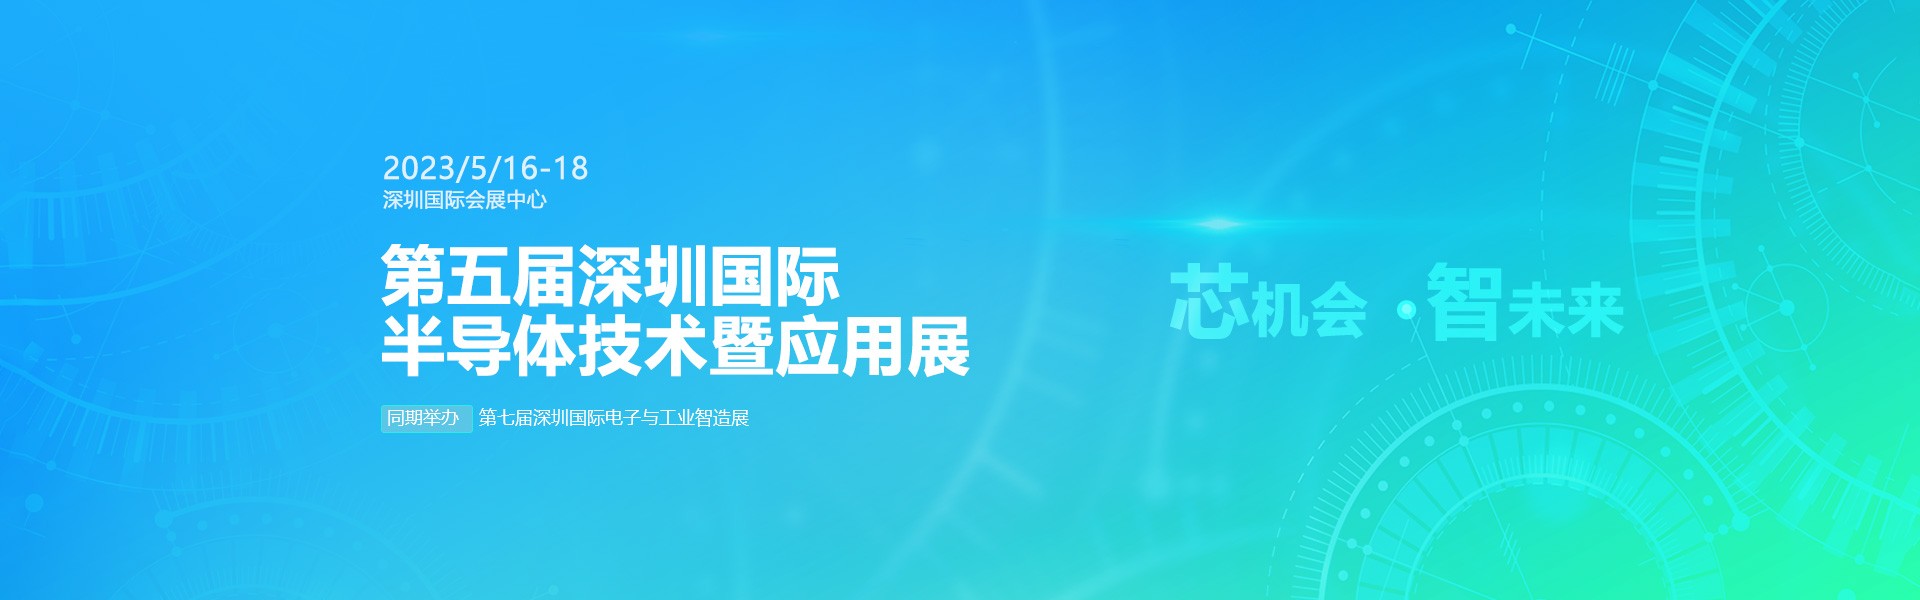 芯机会、智未来，官方网站机械在第五届深圳半导体技术暨应用展与您相约！